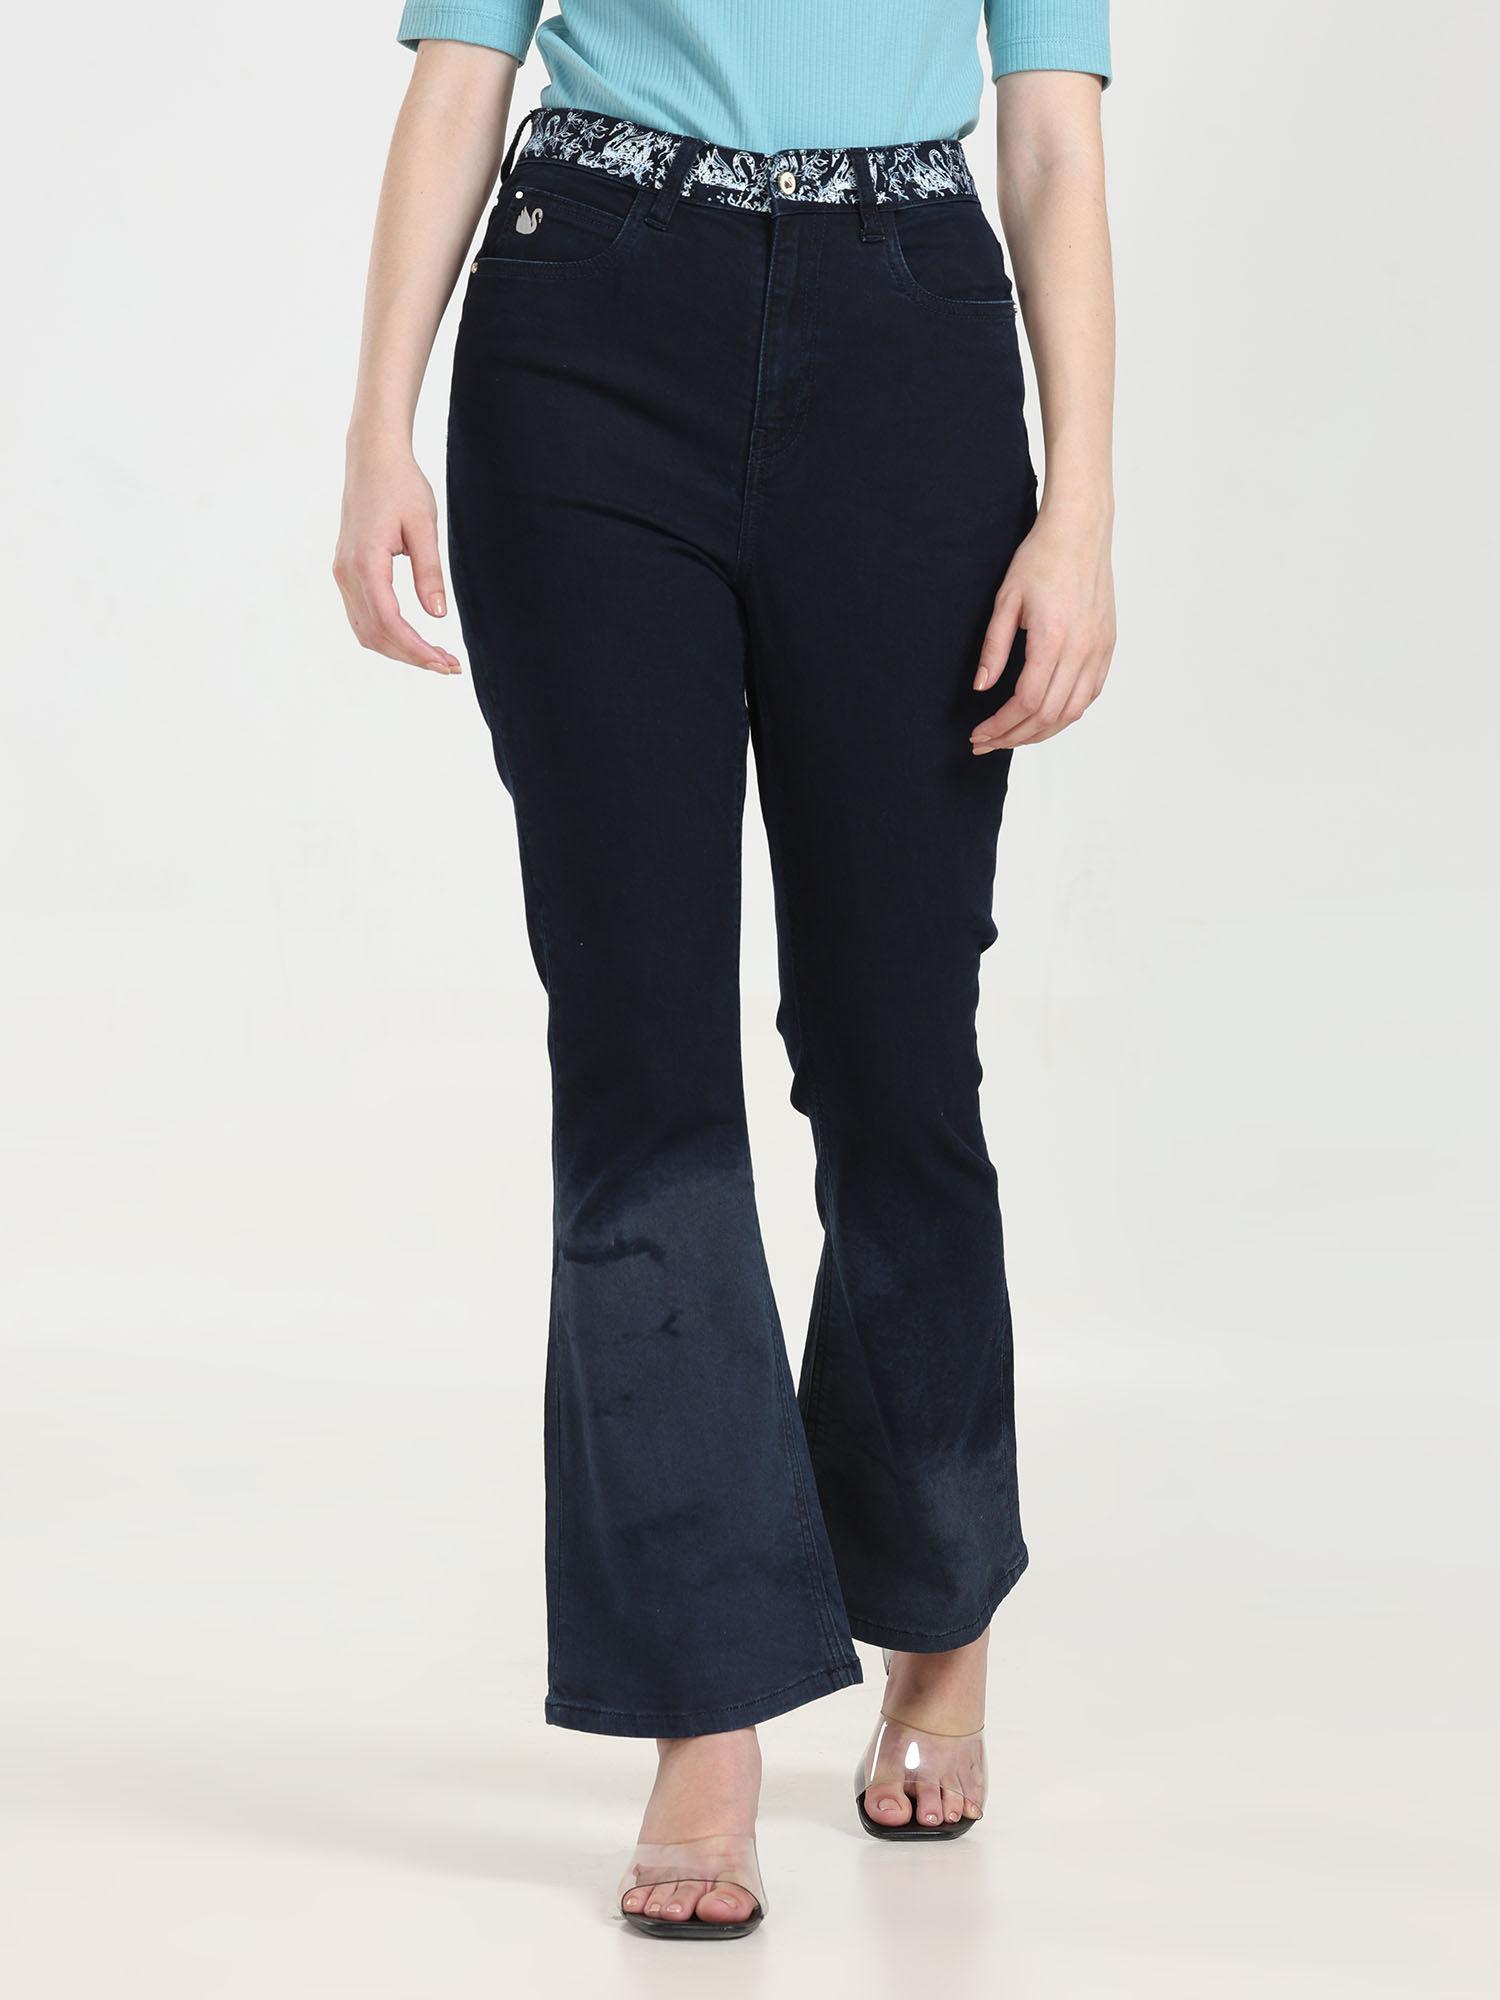 women navy blue high waist laser print boot cut jeans